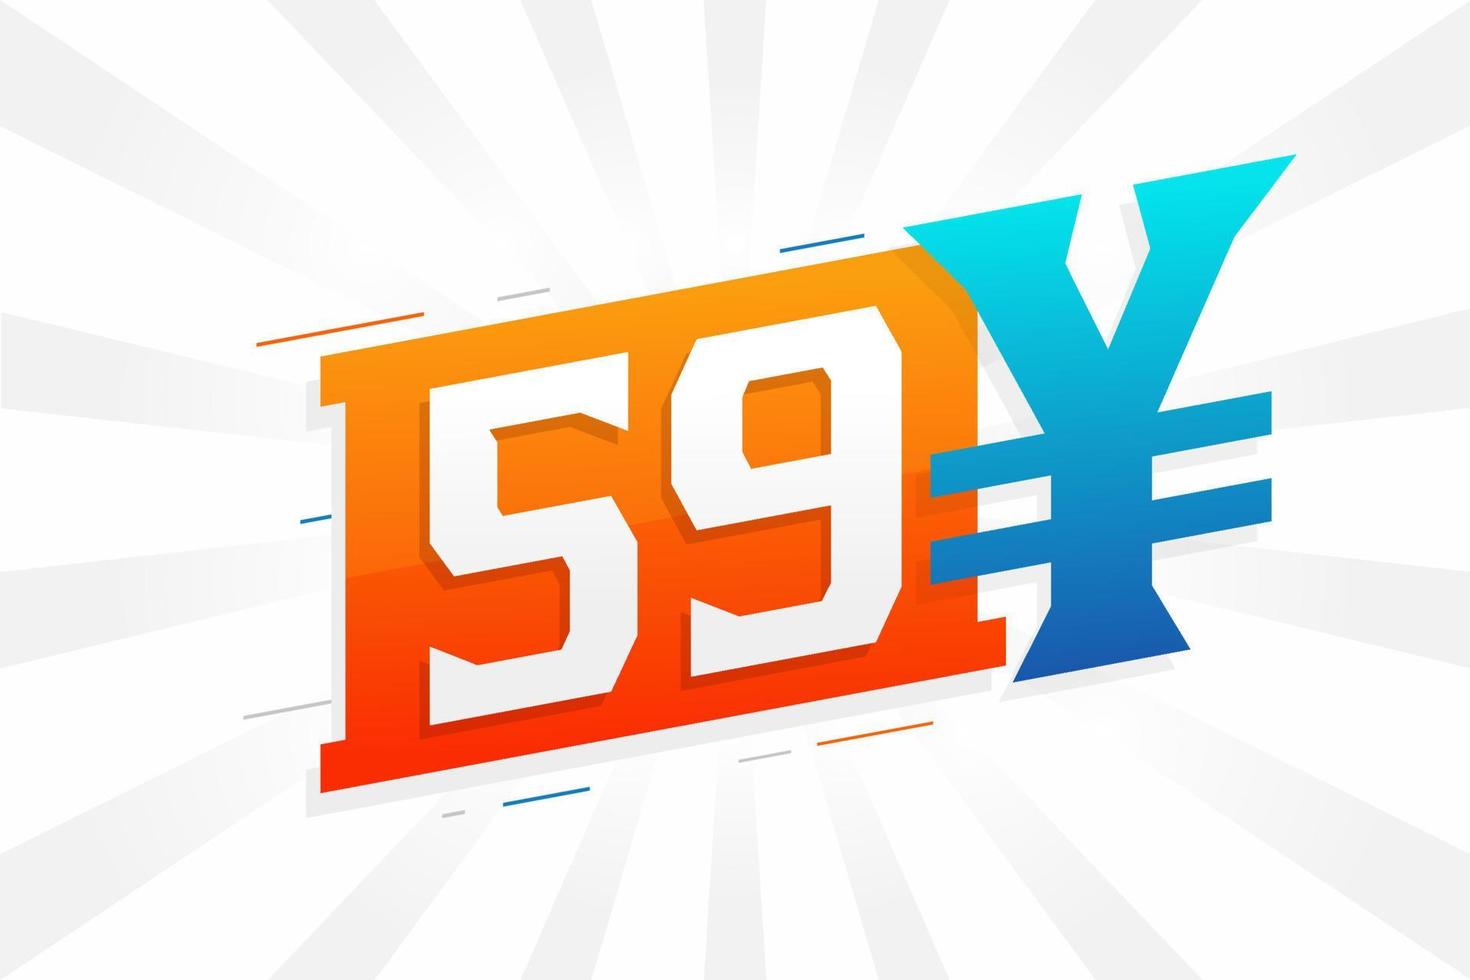 Símbolo de texto de vetor de moeda chinesa de 59 yuan. Vetor de estoque de dinheiro de moeda japonesa de 59 ienes